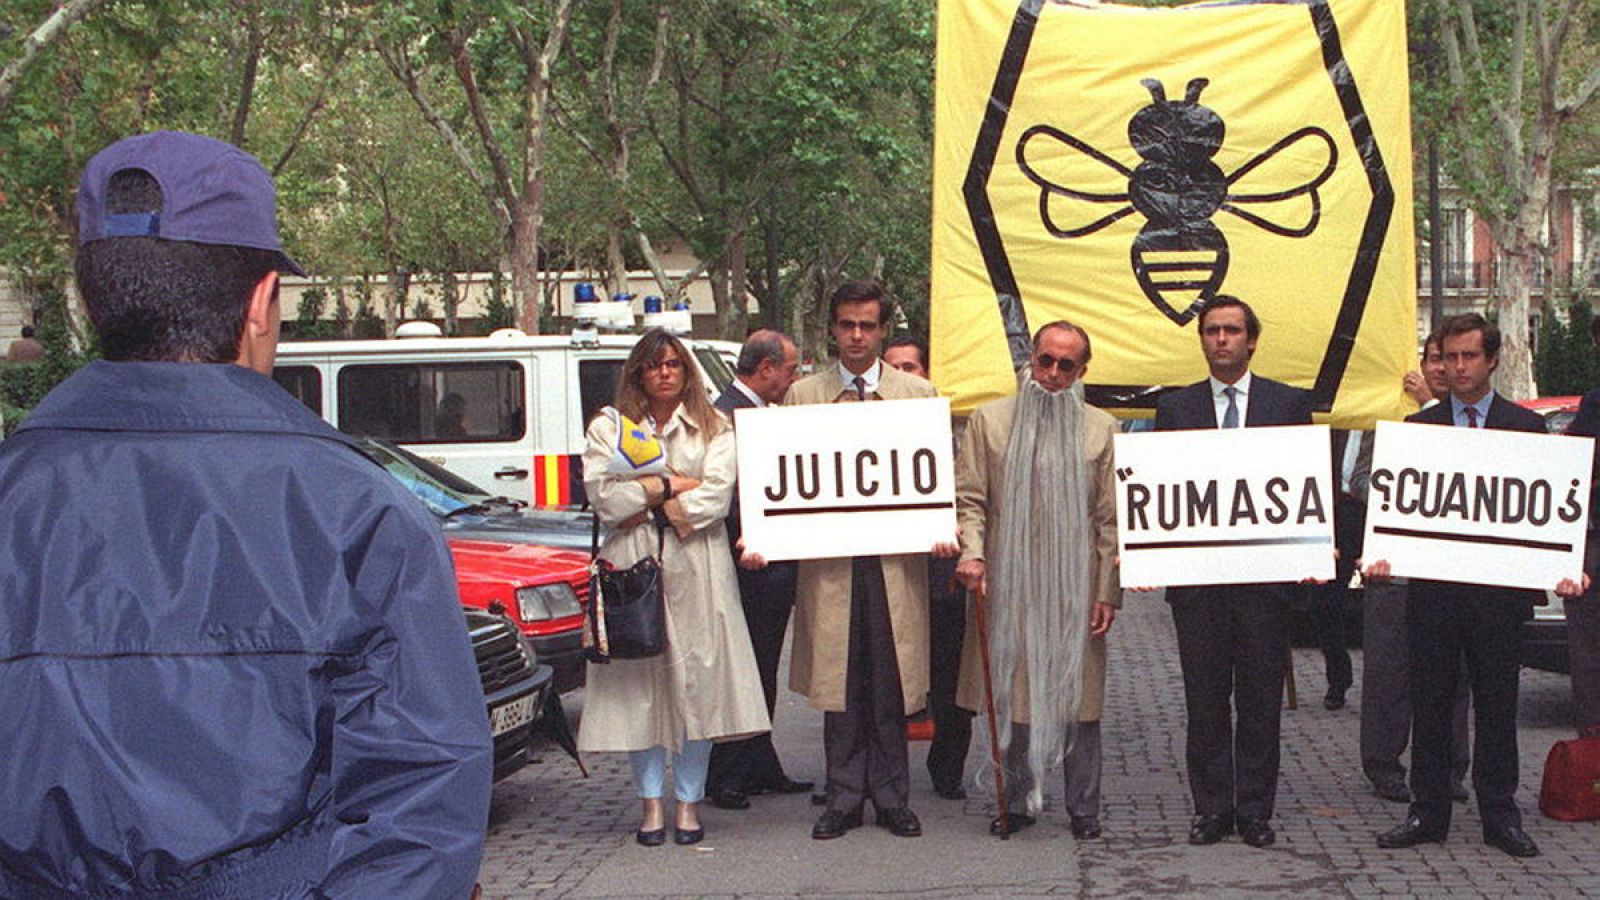 Ruiz Mateos disfrazado de "Matusalem" ante la Audiencia Nacional en la apertura del año judicial de 1993.